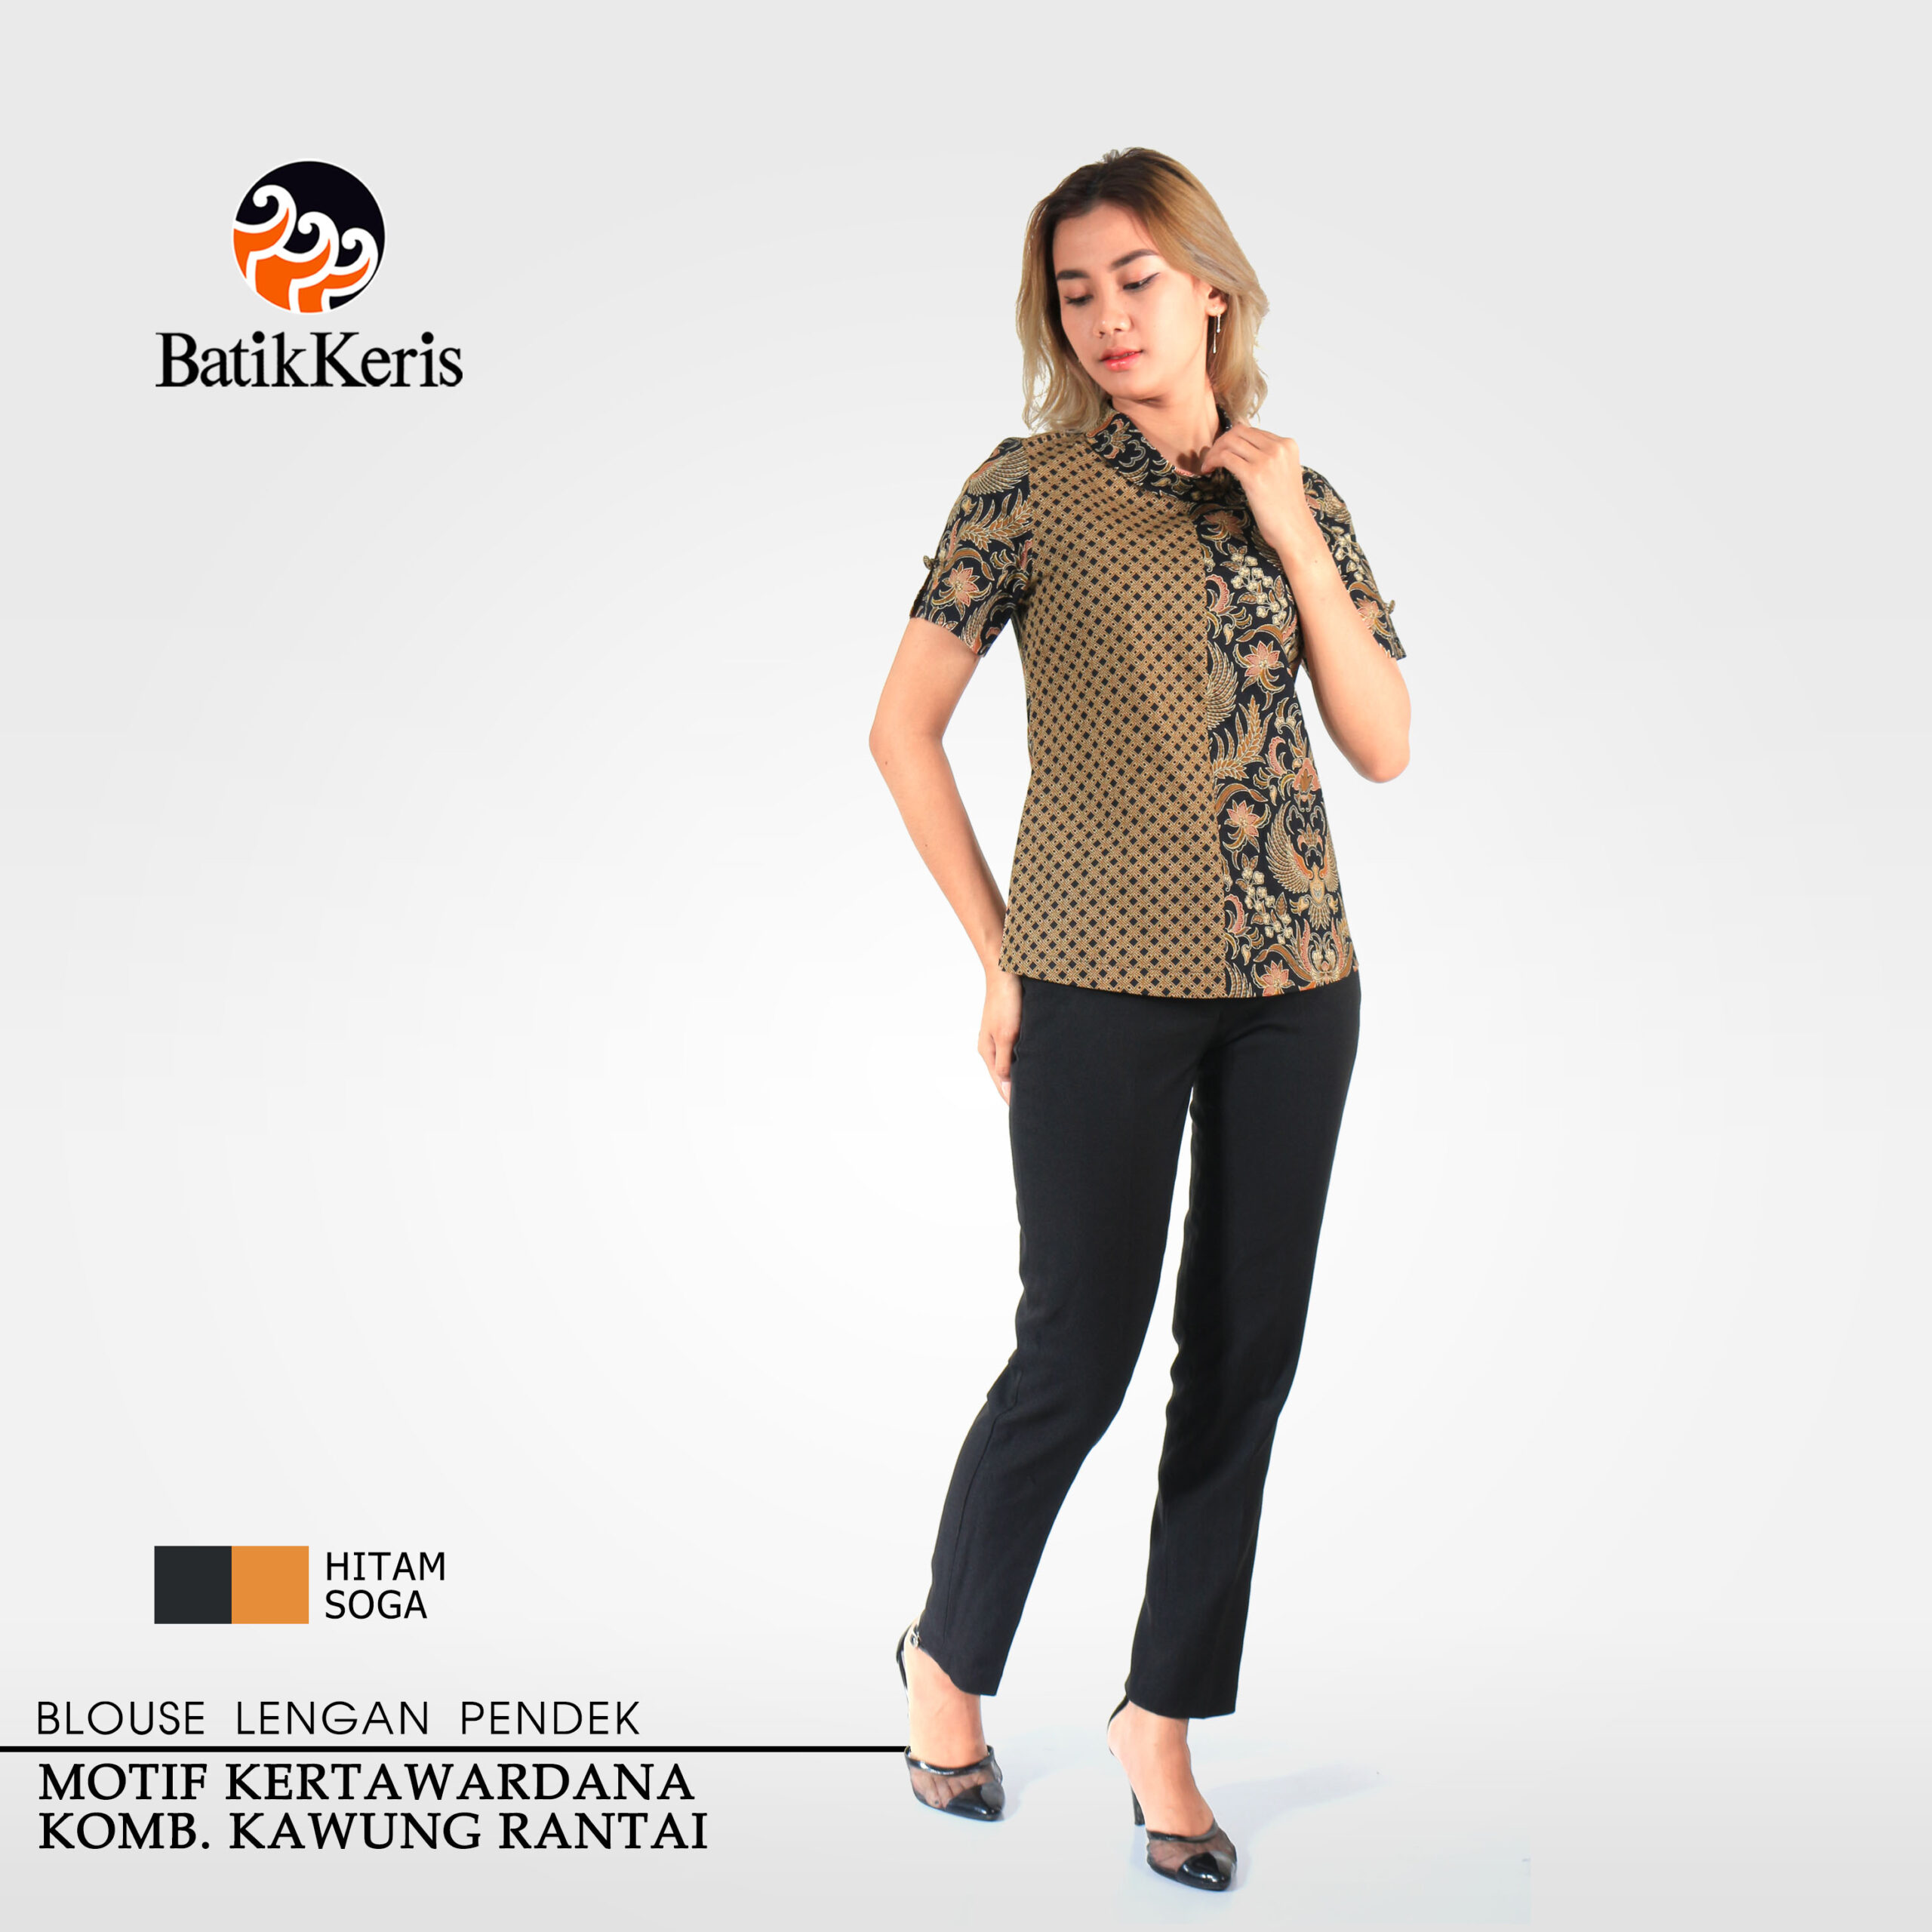 Blouse Batik Lengan Pendek Motif Kertawardana Kombinasi Kawung Rantai Batik Keris Online 